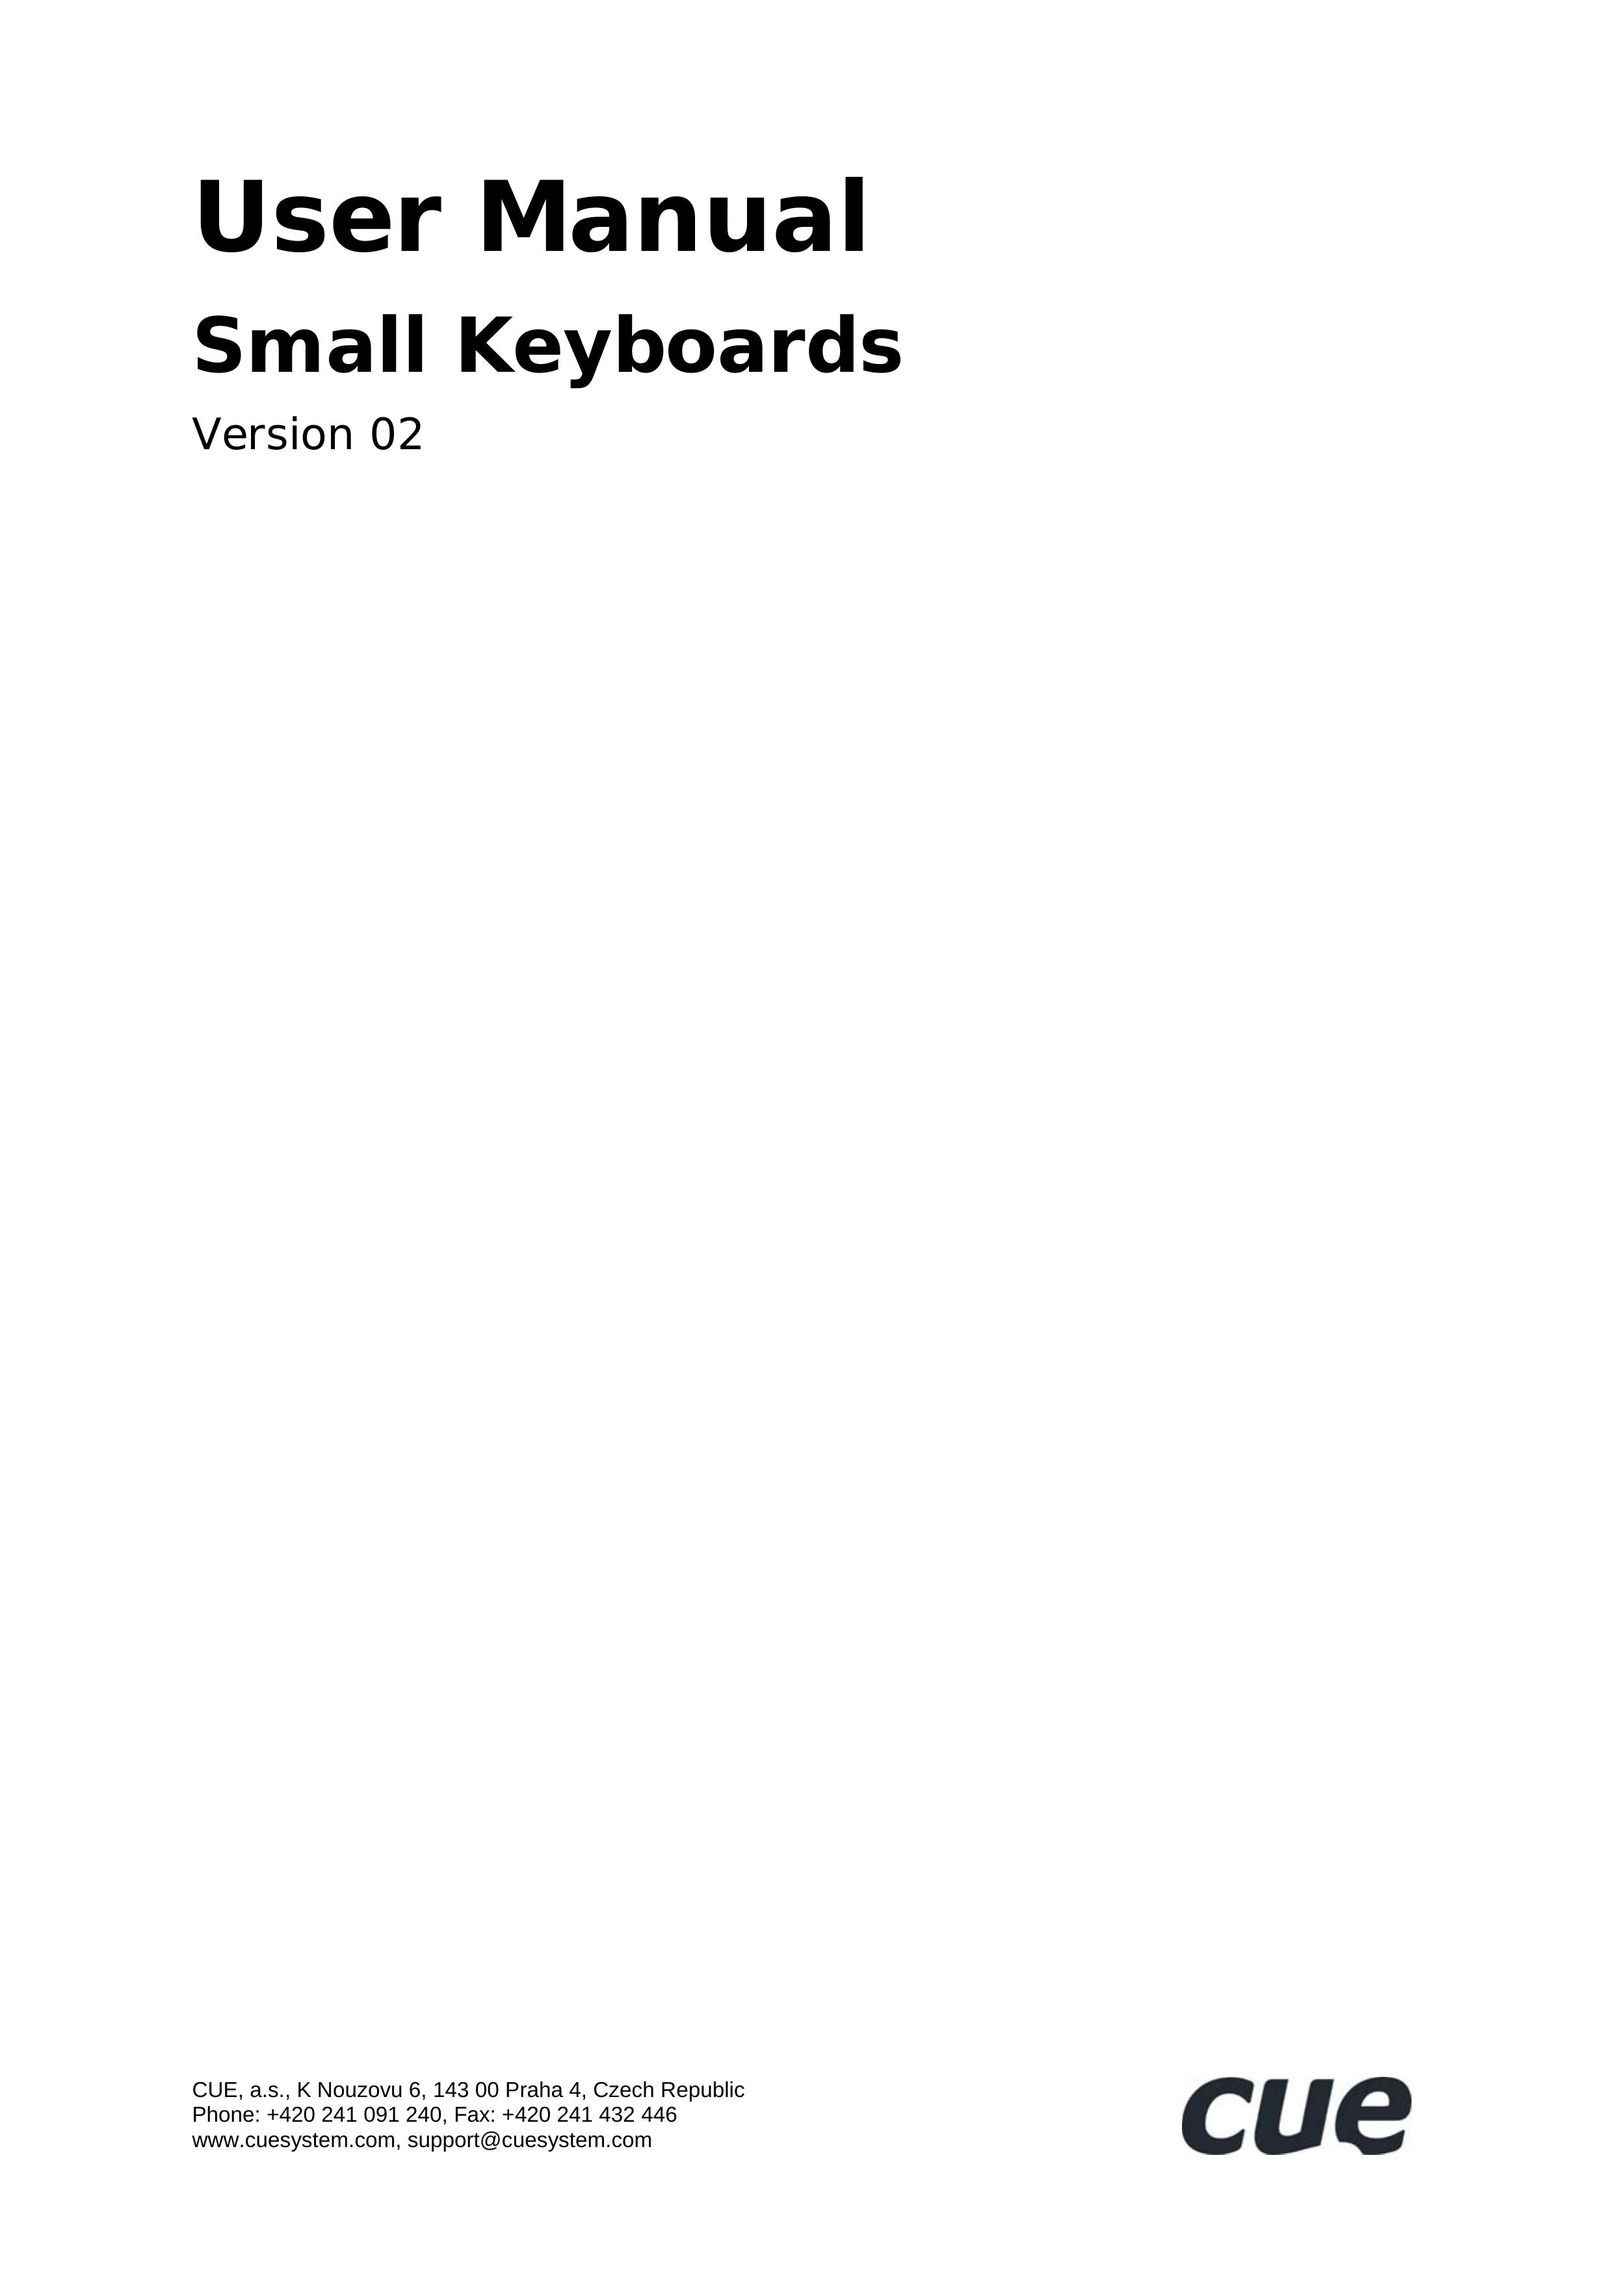 SIIG UM022_02 Computer Keyboard User Manual